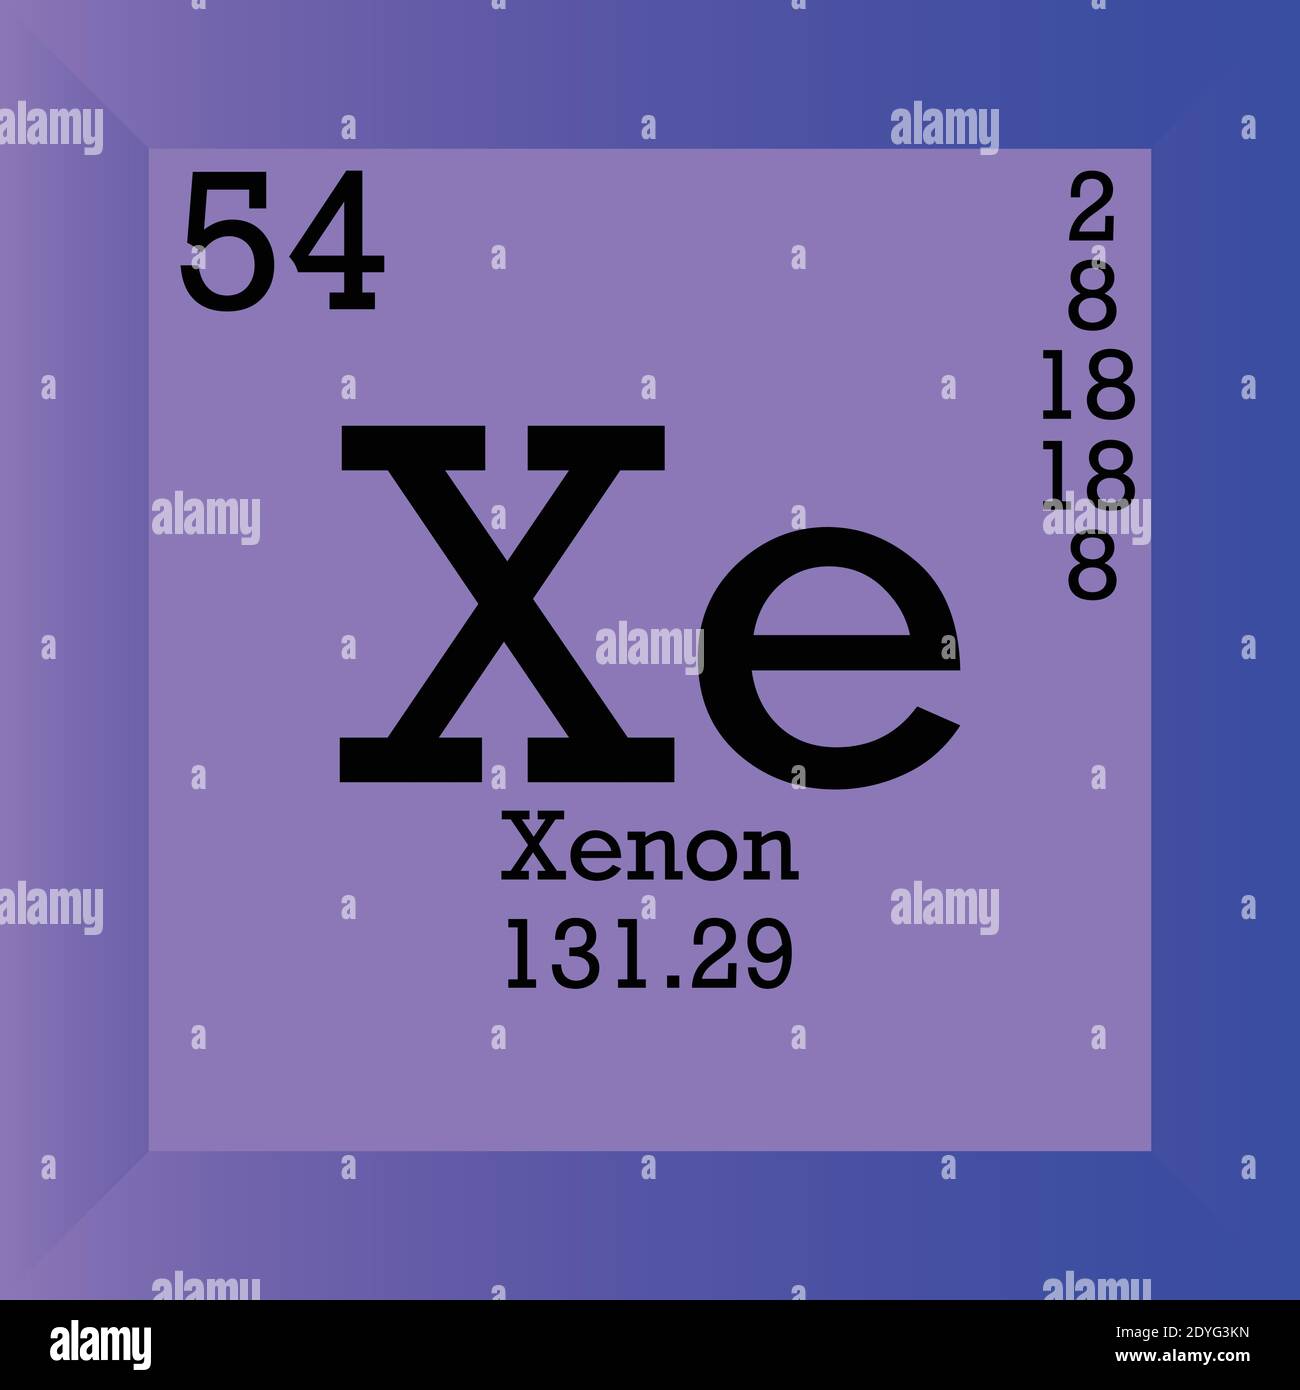 Xe ксенон элемент. Ксенон химический элемент. Ксенон xe. Ксенон химический элемент история возникновения.